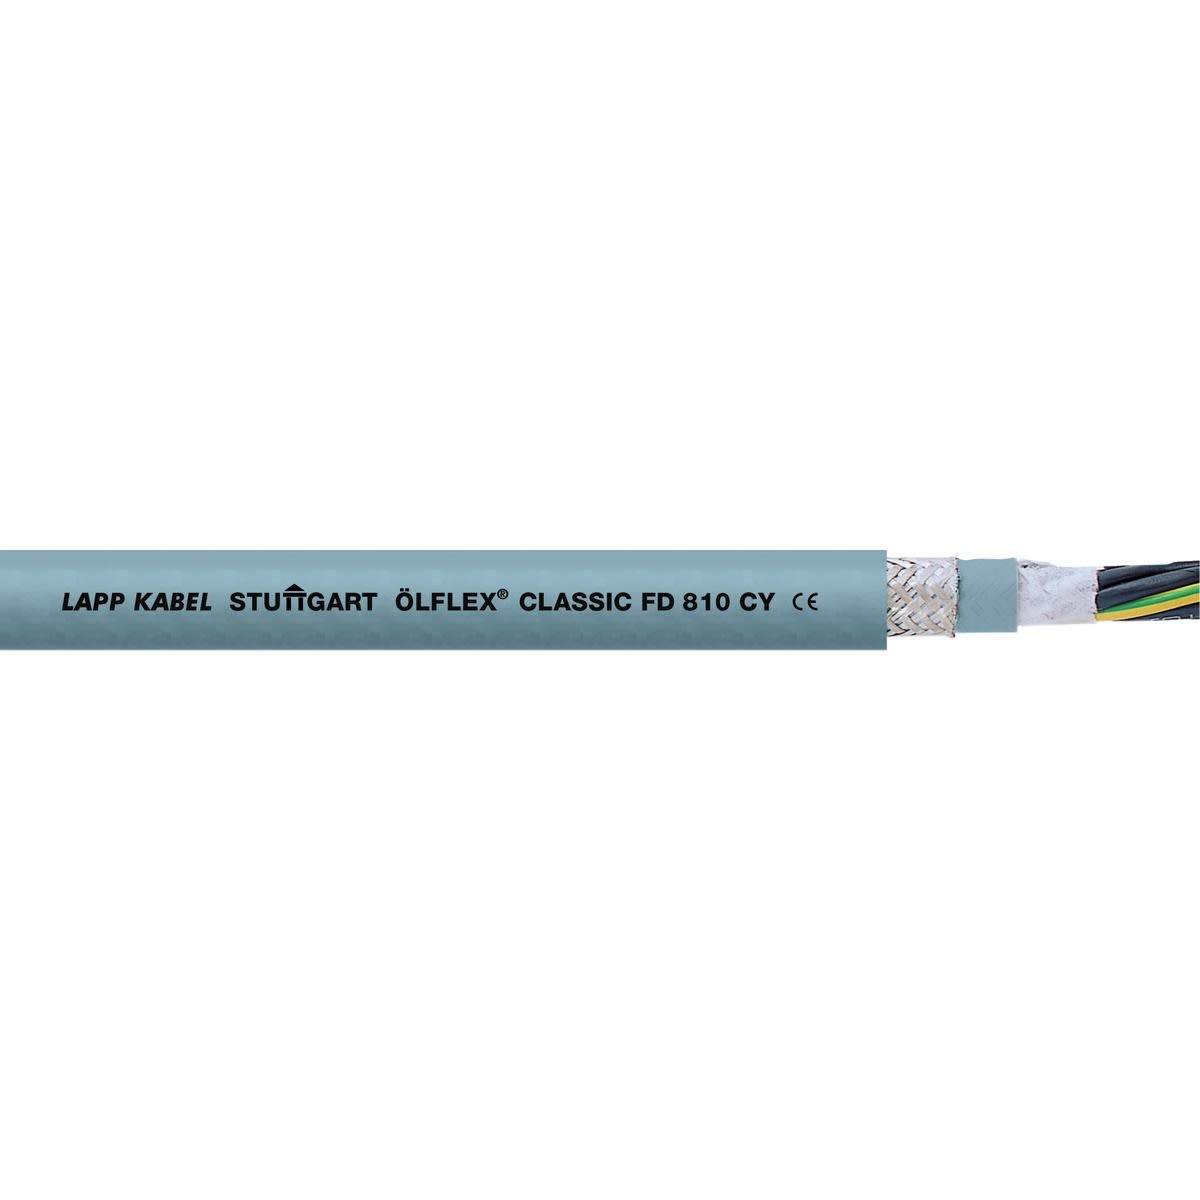 Lapp - ÖLFLEX CLASSIC FD 810 CY 3G0,5